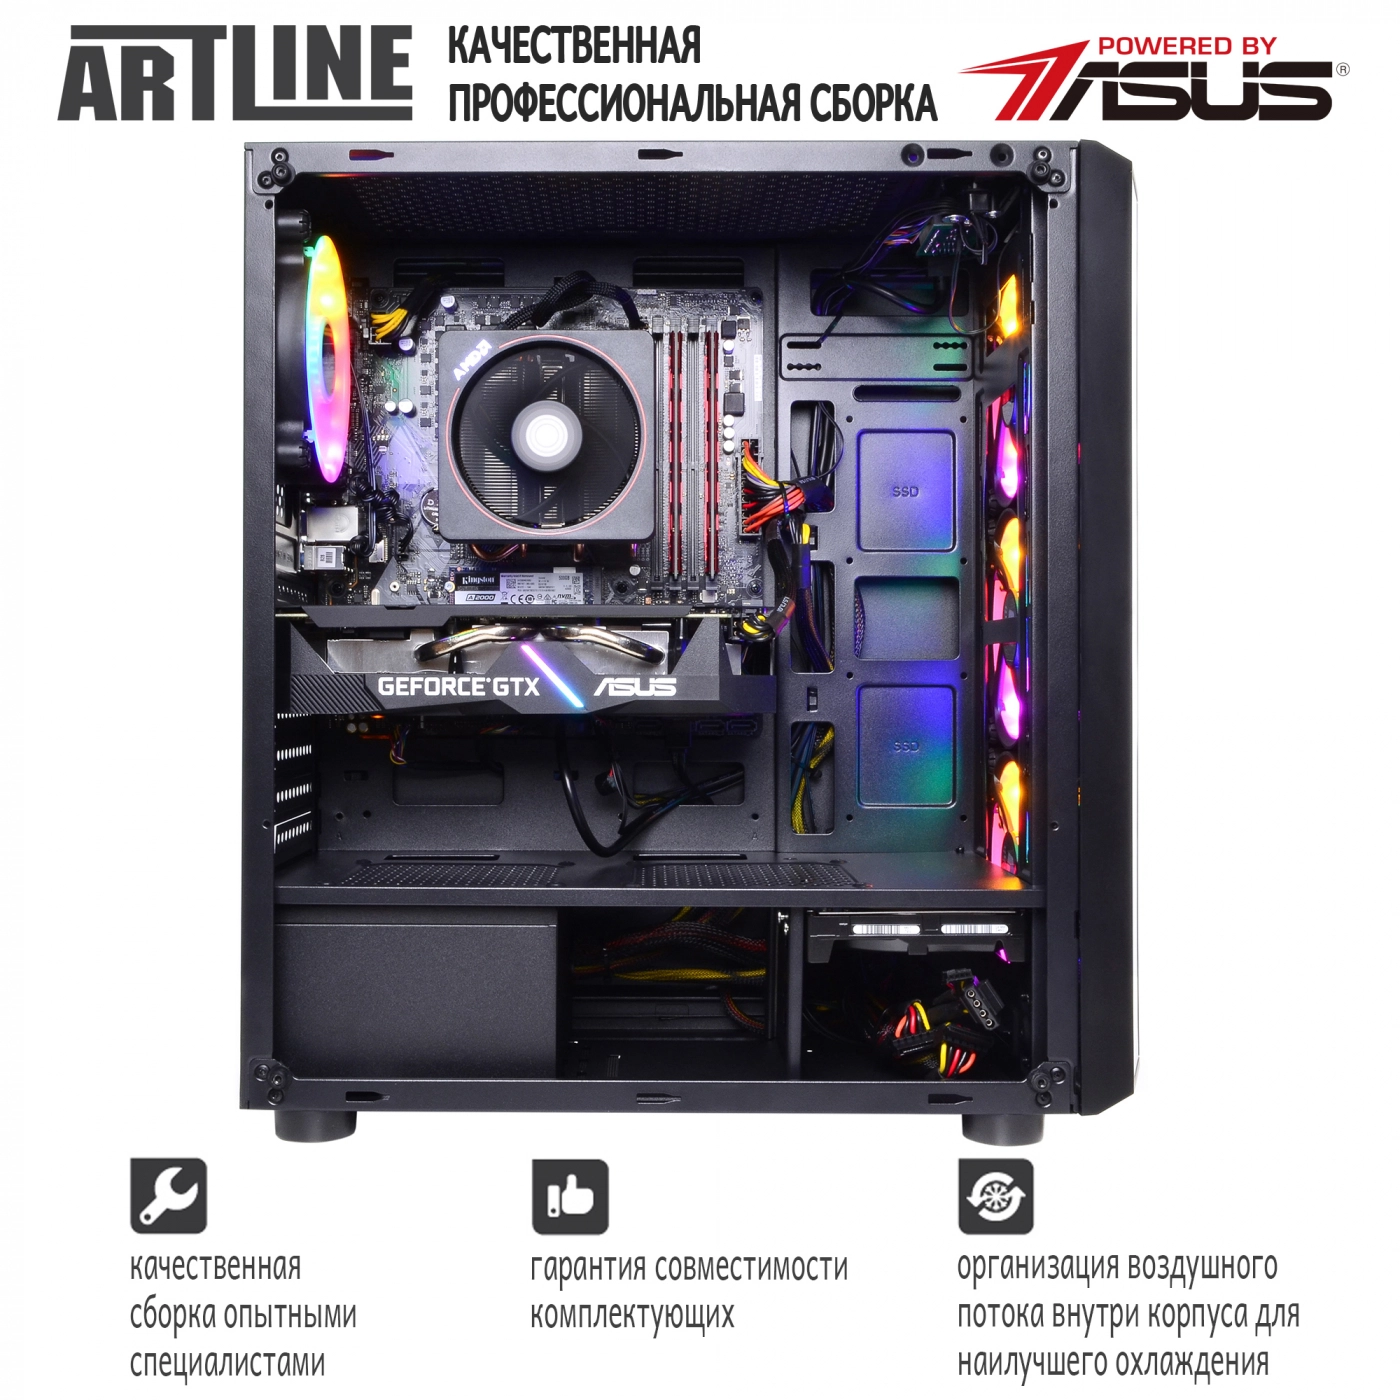 Купить Компьютер ARTLINE Gaming X65v16 - фото 9